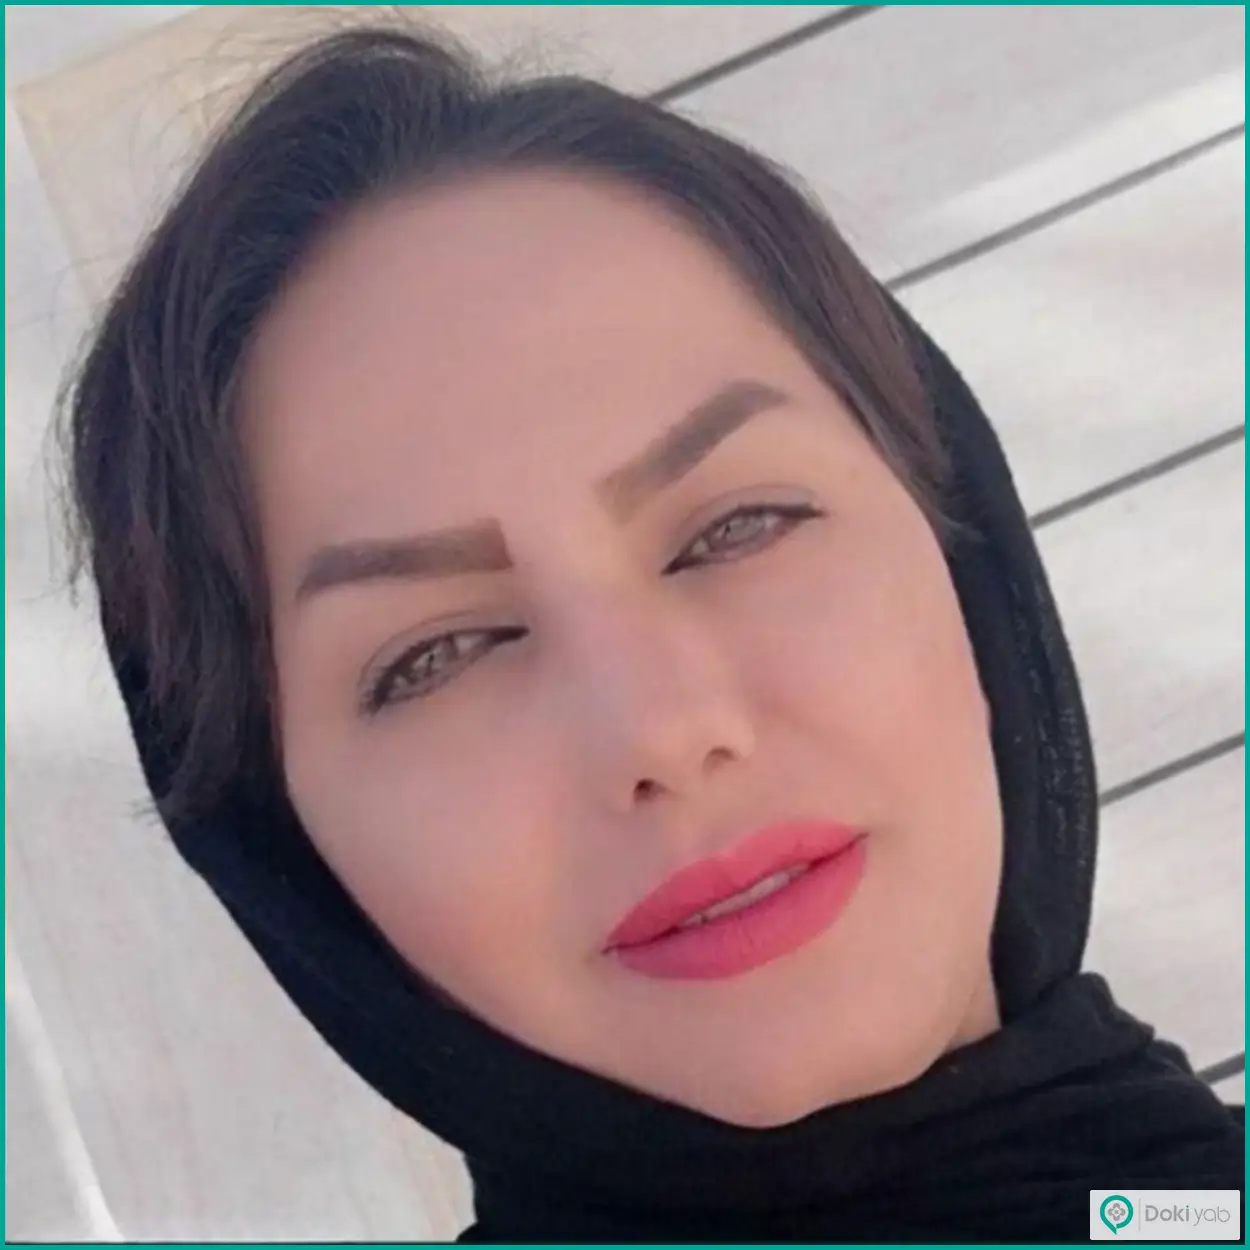 نمونه جراحی بینی طبیعی دکتر بهروز گندمی در شیراز